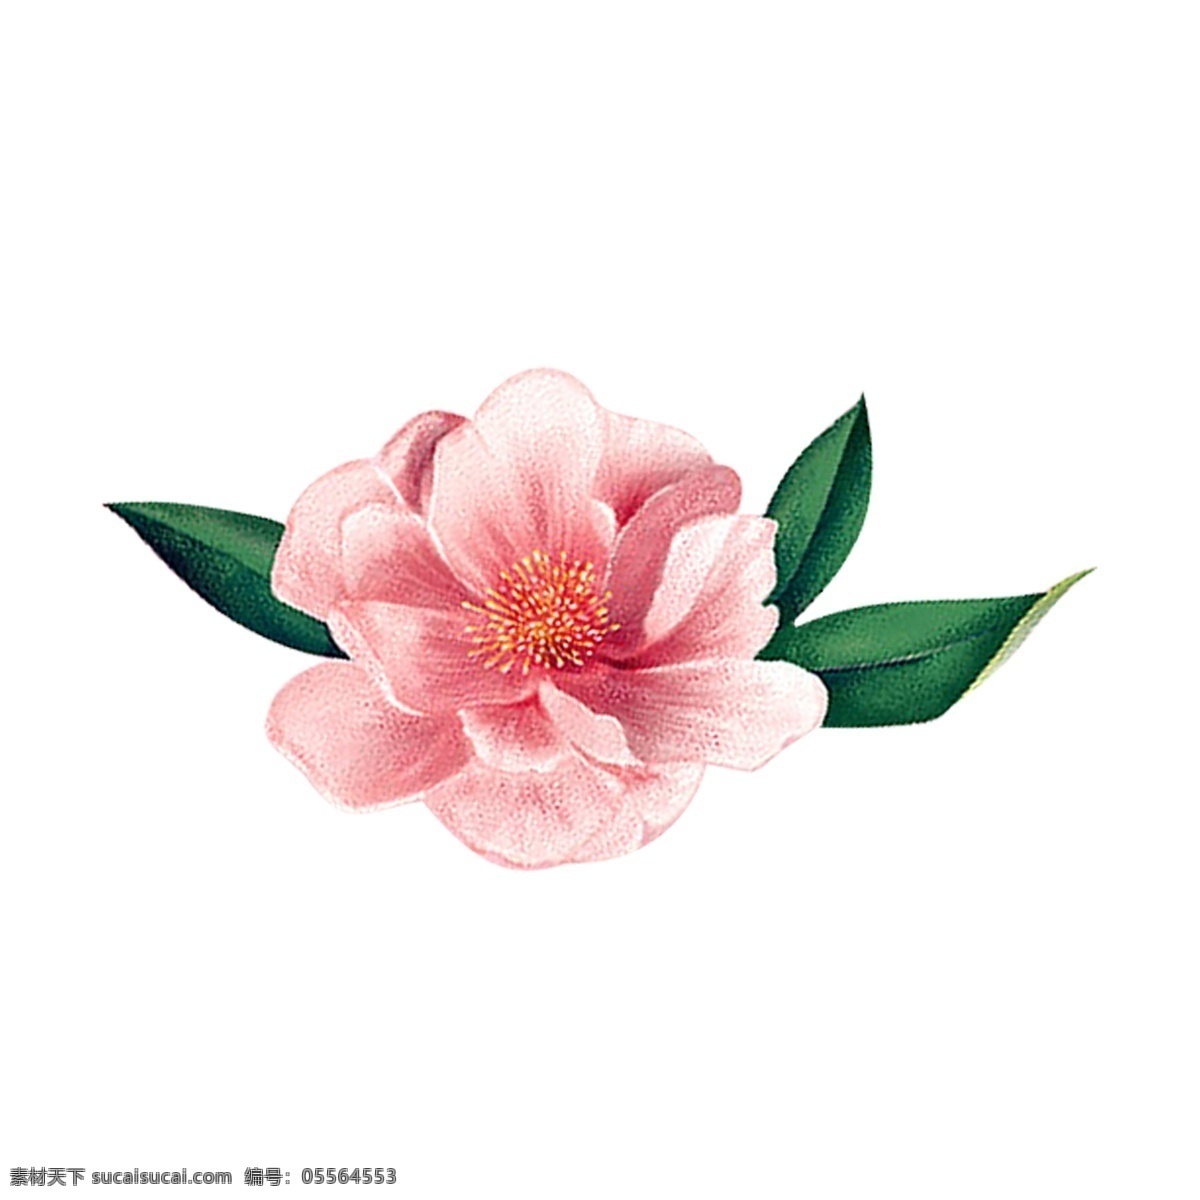 粉红色 花朵 免 抠 图 花瓣 植物 新鲜的花朵 绿色植物 绿色生态 红色桃花 树叶 粉红色花朵 免抠图